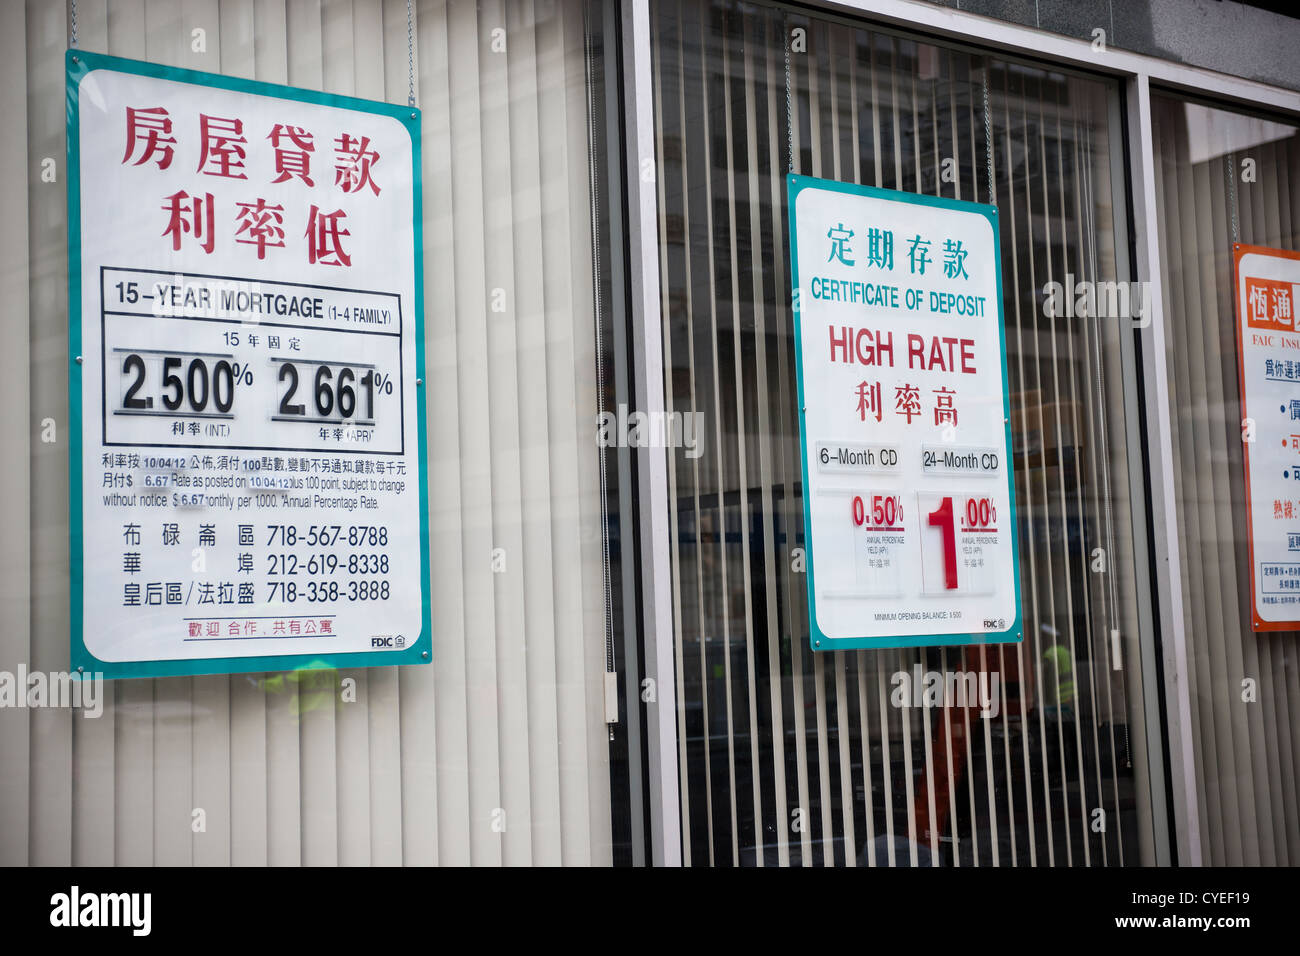 Las tasas de interés de las hipotecas y los certificados de depósito son vistos en la ventanilla de un banco en Chinatown de Nueva York Foto de stock